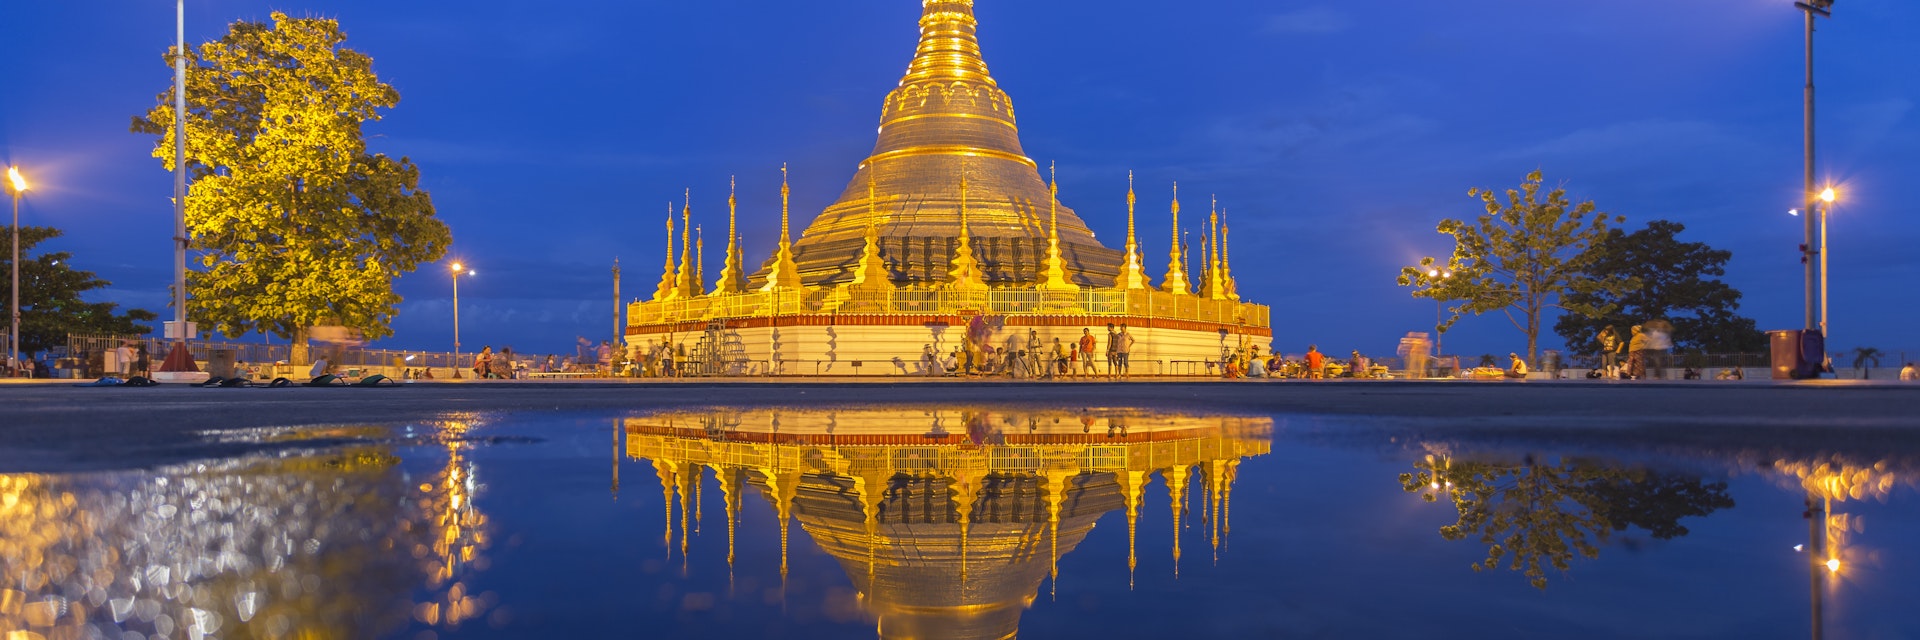 The reflection of Shwedagon Pagoda, Myanmar